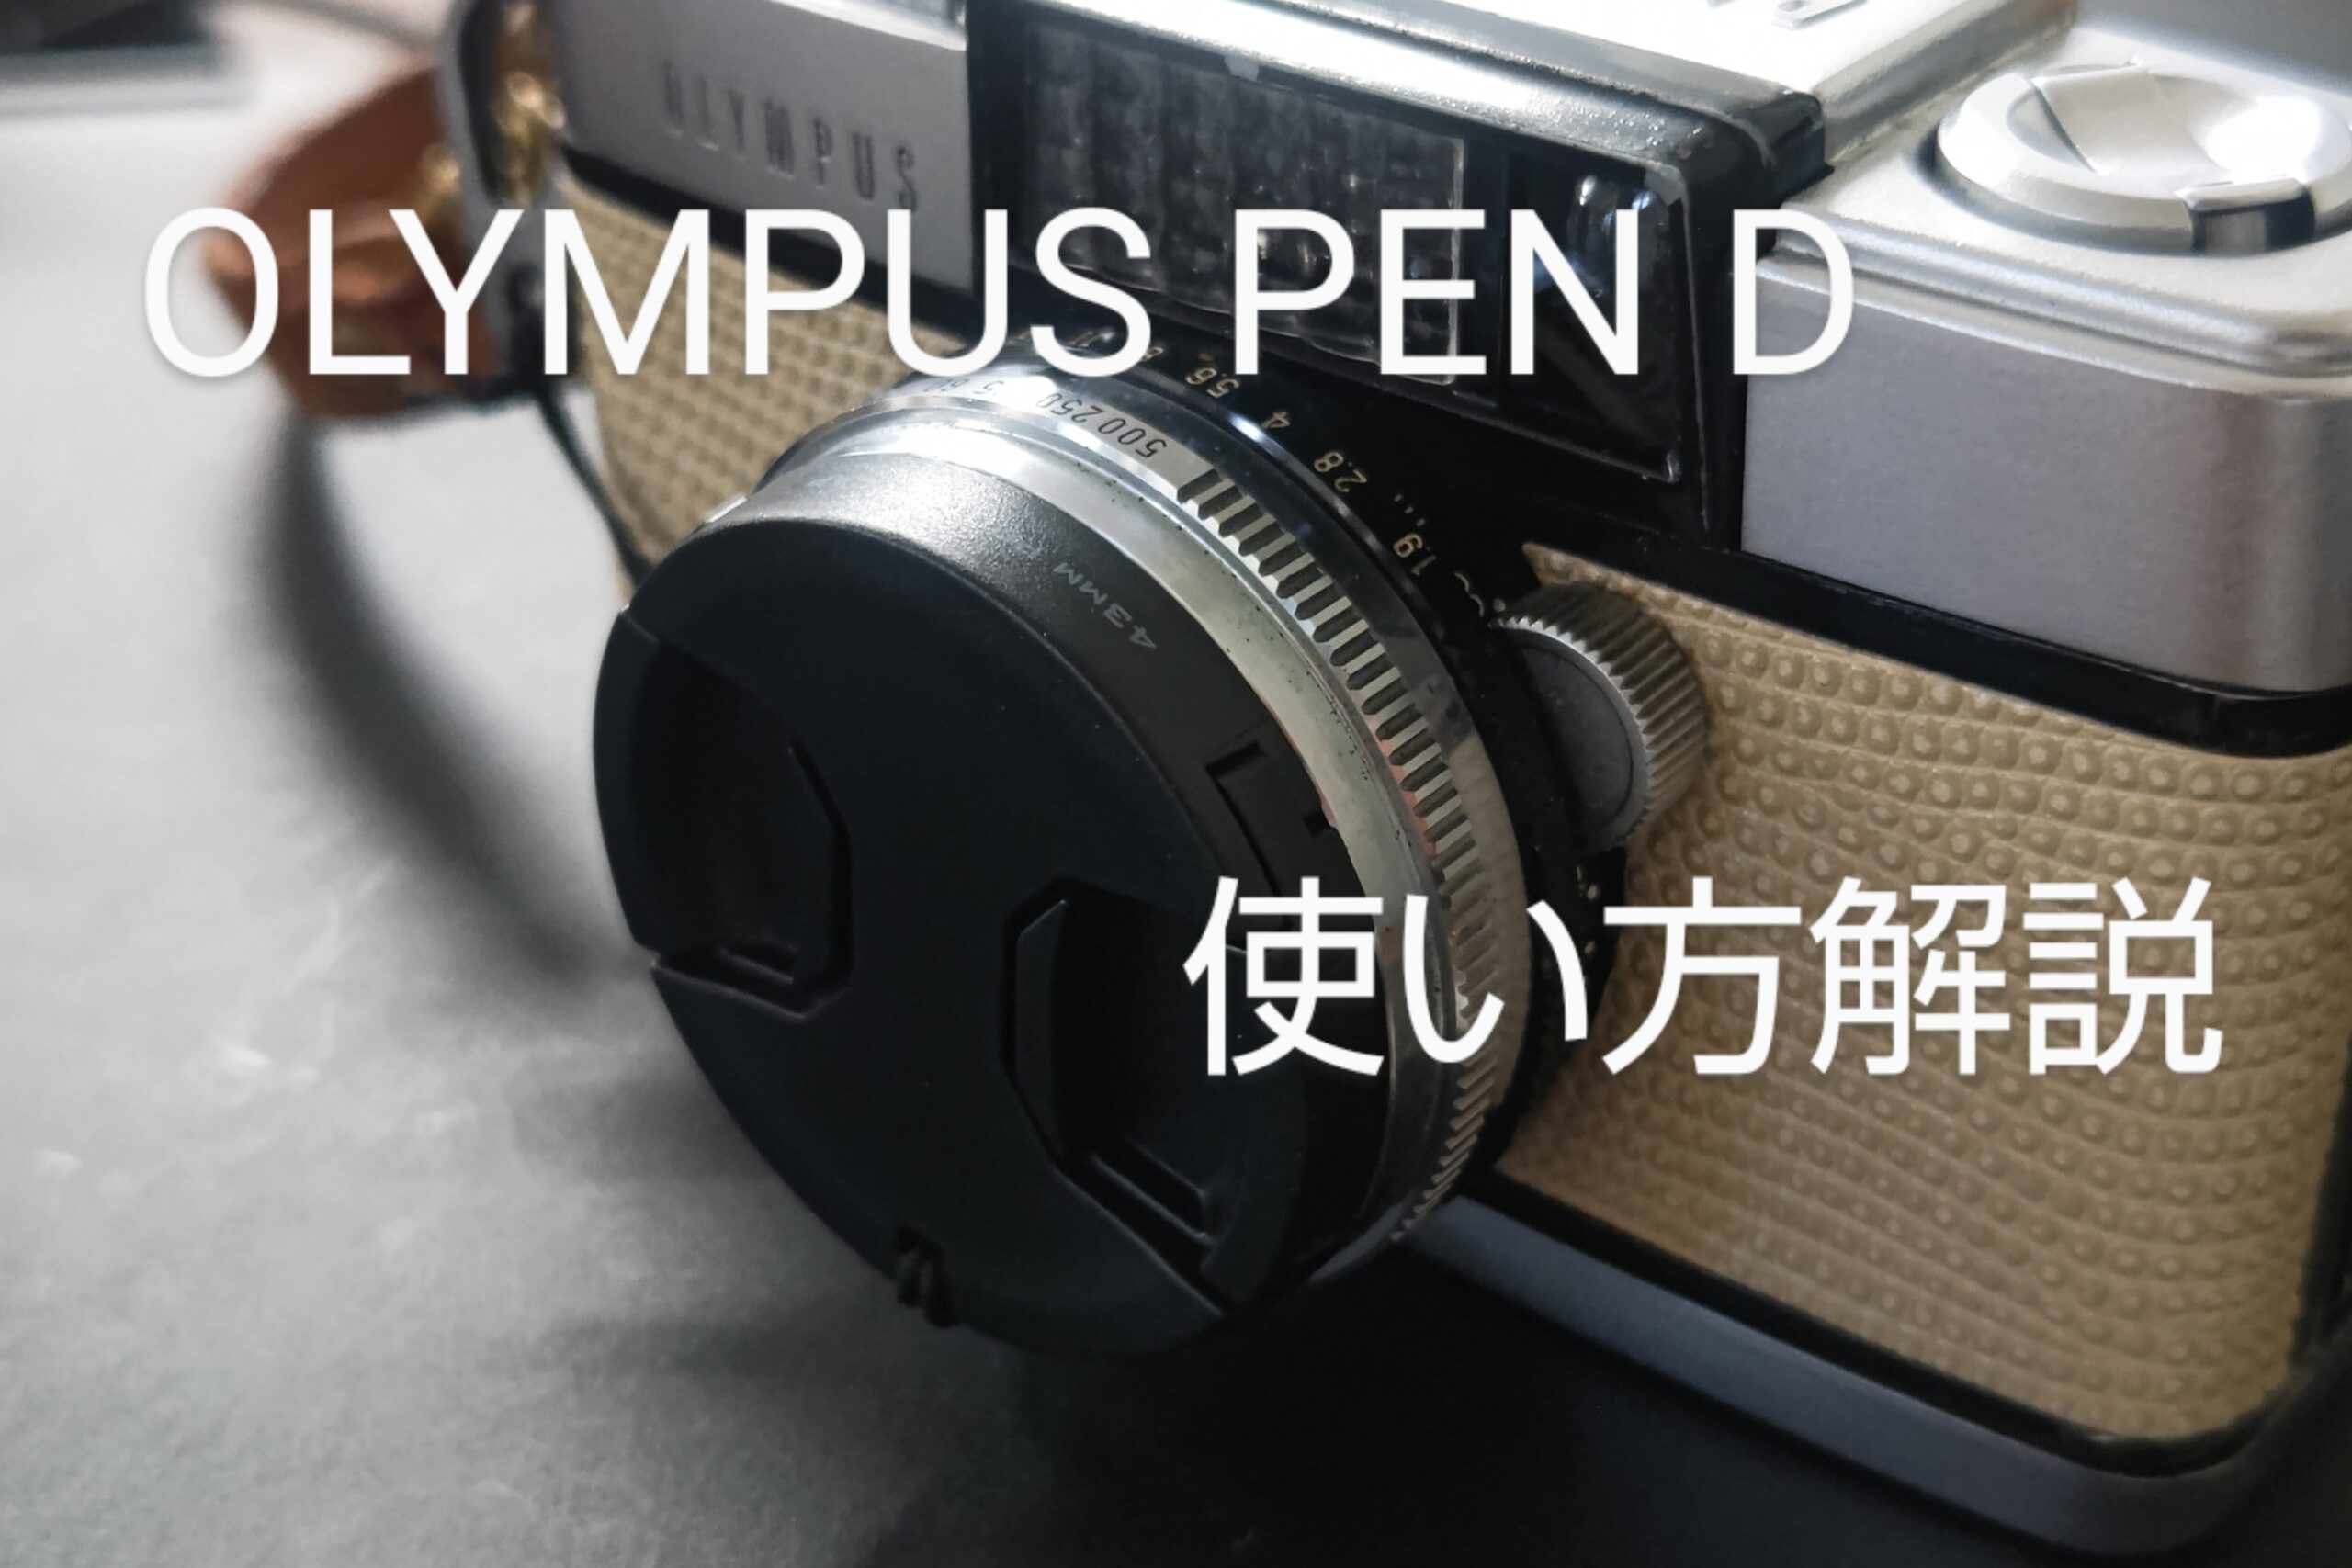 ハーフカメラ「Olympus PEN D」の使い方 - PHOTOWALK~写真やカメラの話~